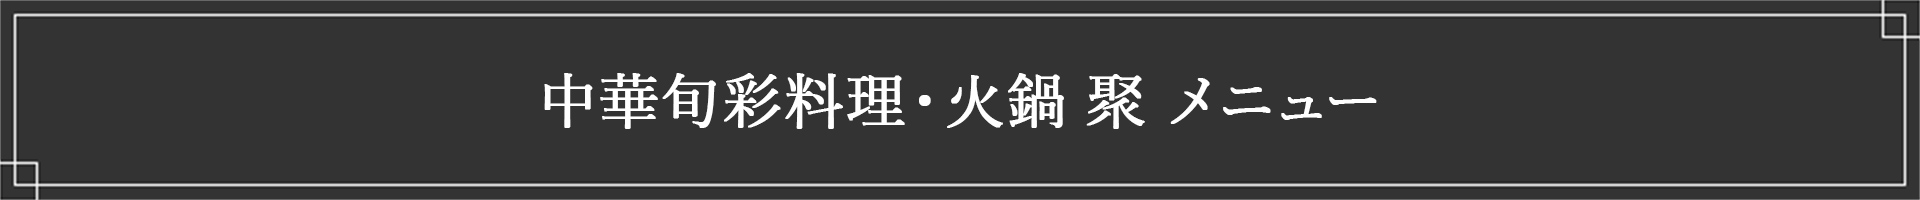 中華旬彩料理・火鍋 聚 メニュー